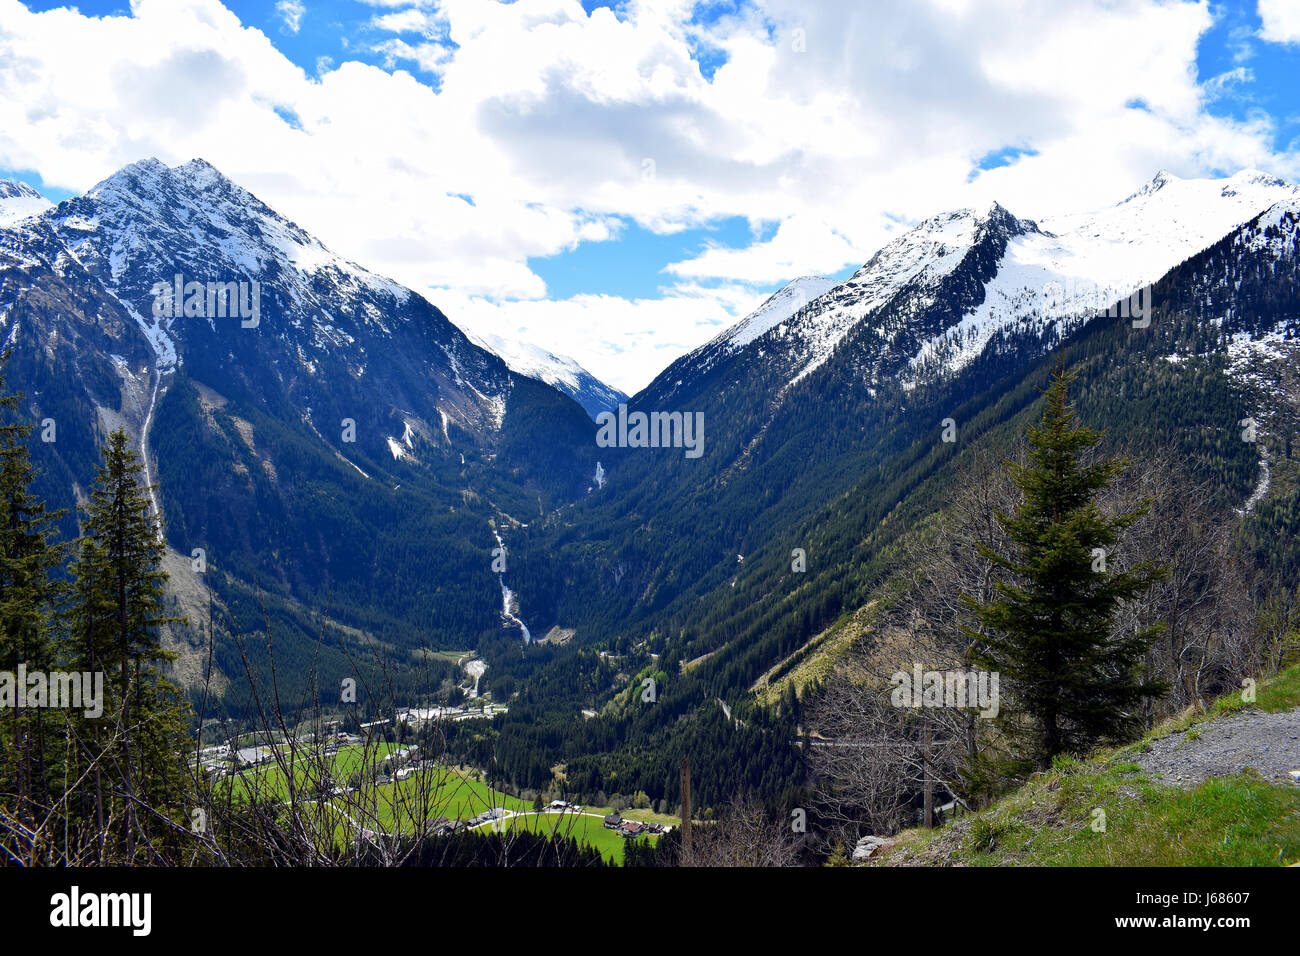 Chutes de Krimml sur gerlos passent, Alpes autrichiennes, l'Autriche, entre des montagnes couvertes de neige Banque D'Images